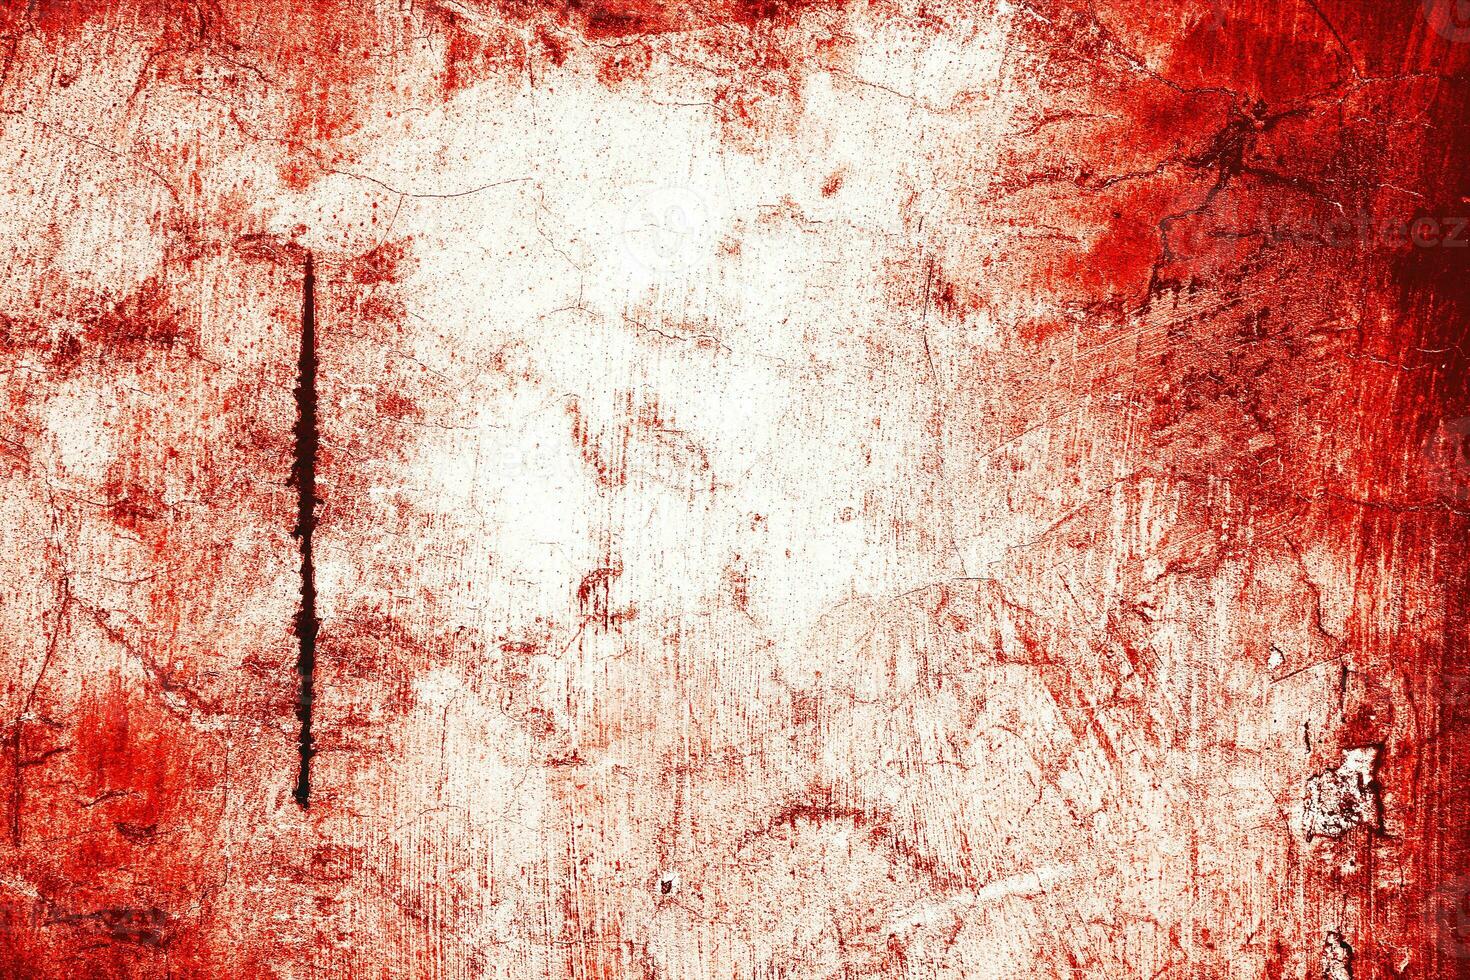 mörk röd blod på gammal vägg för halloween begrepp foto